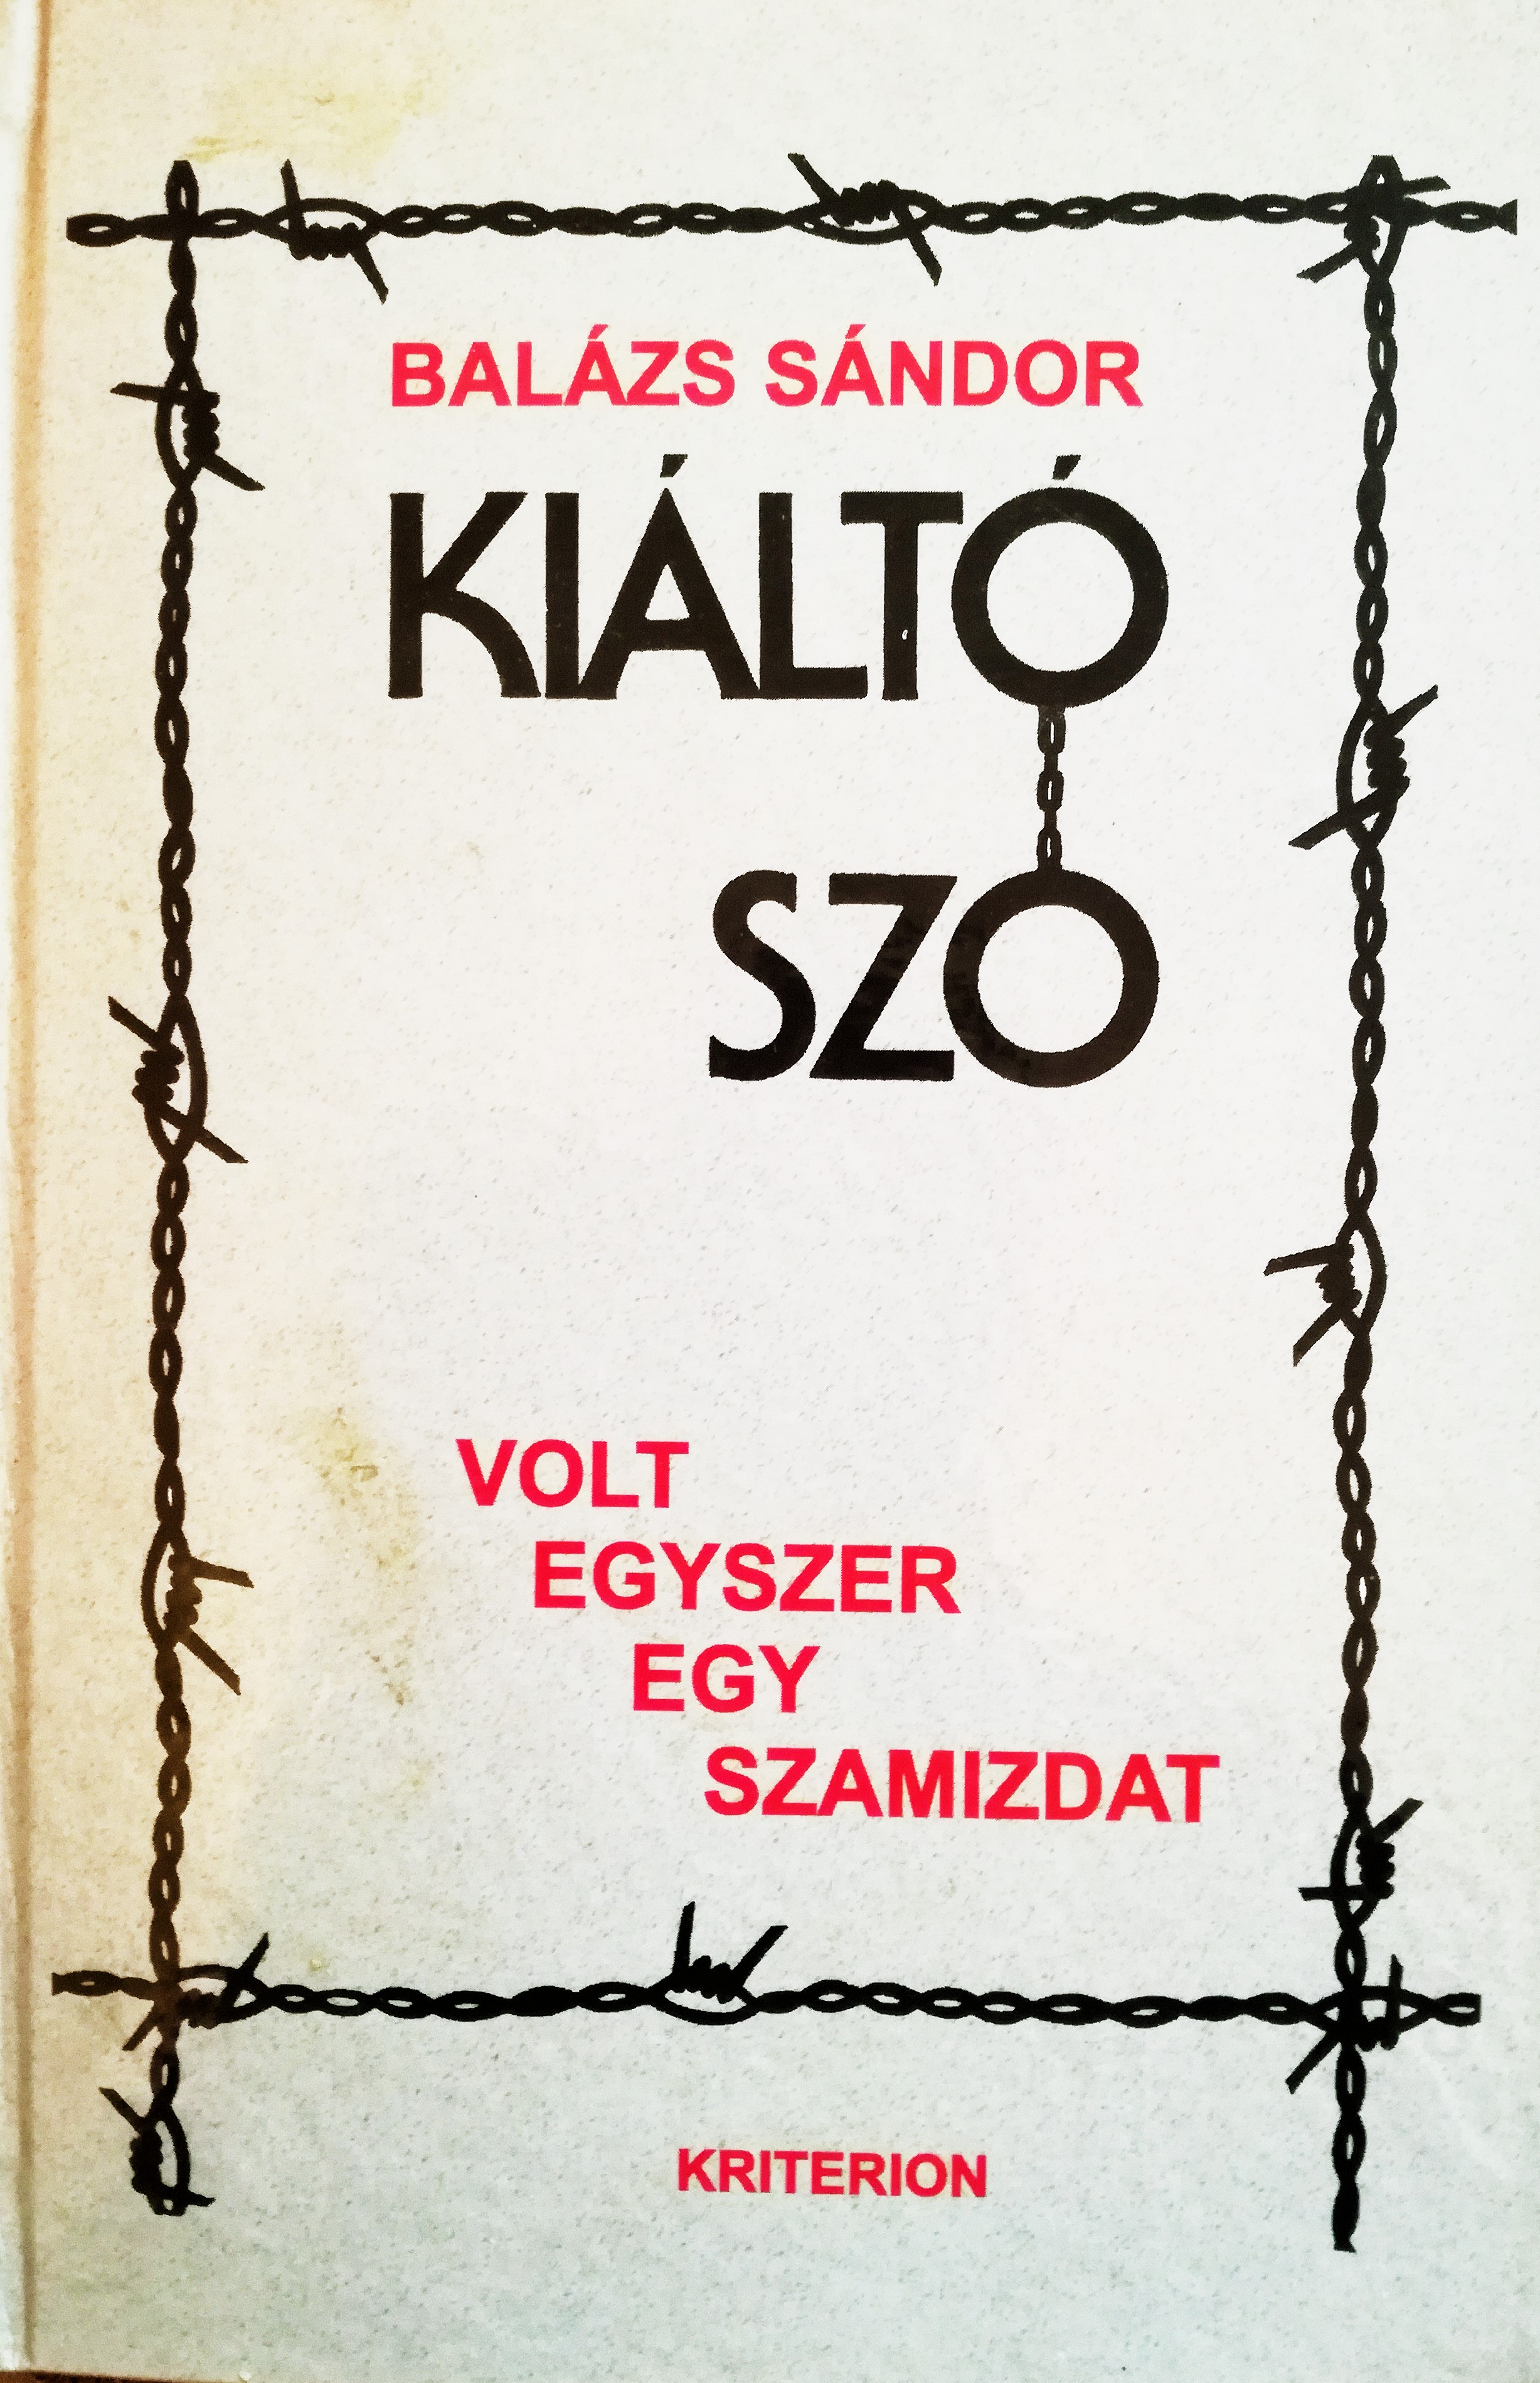 Front cover of the book Kiáltó Szó: Volt egyszer egy szamizdat (Screaming Word: Once There Was a Samizdat)